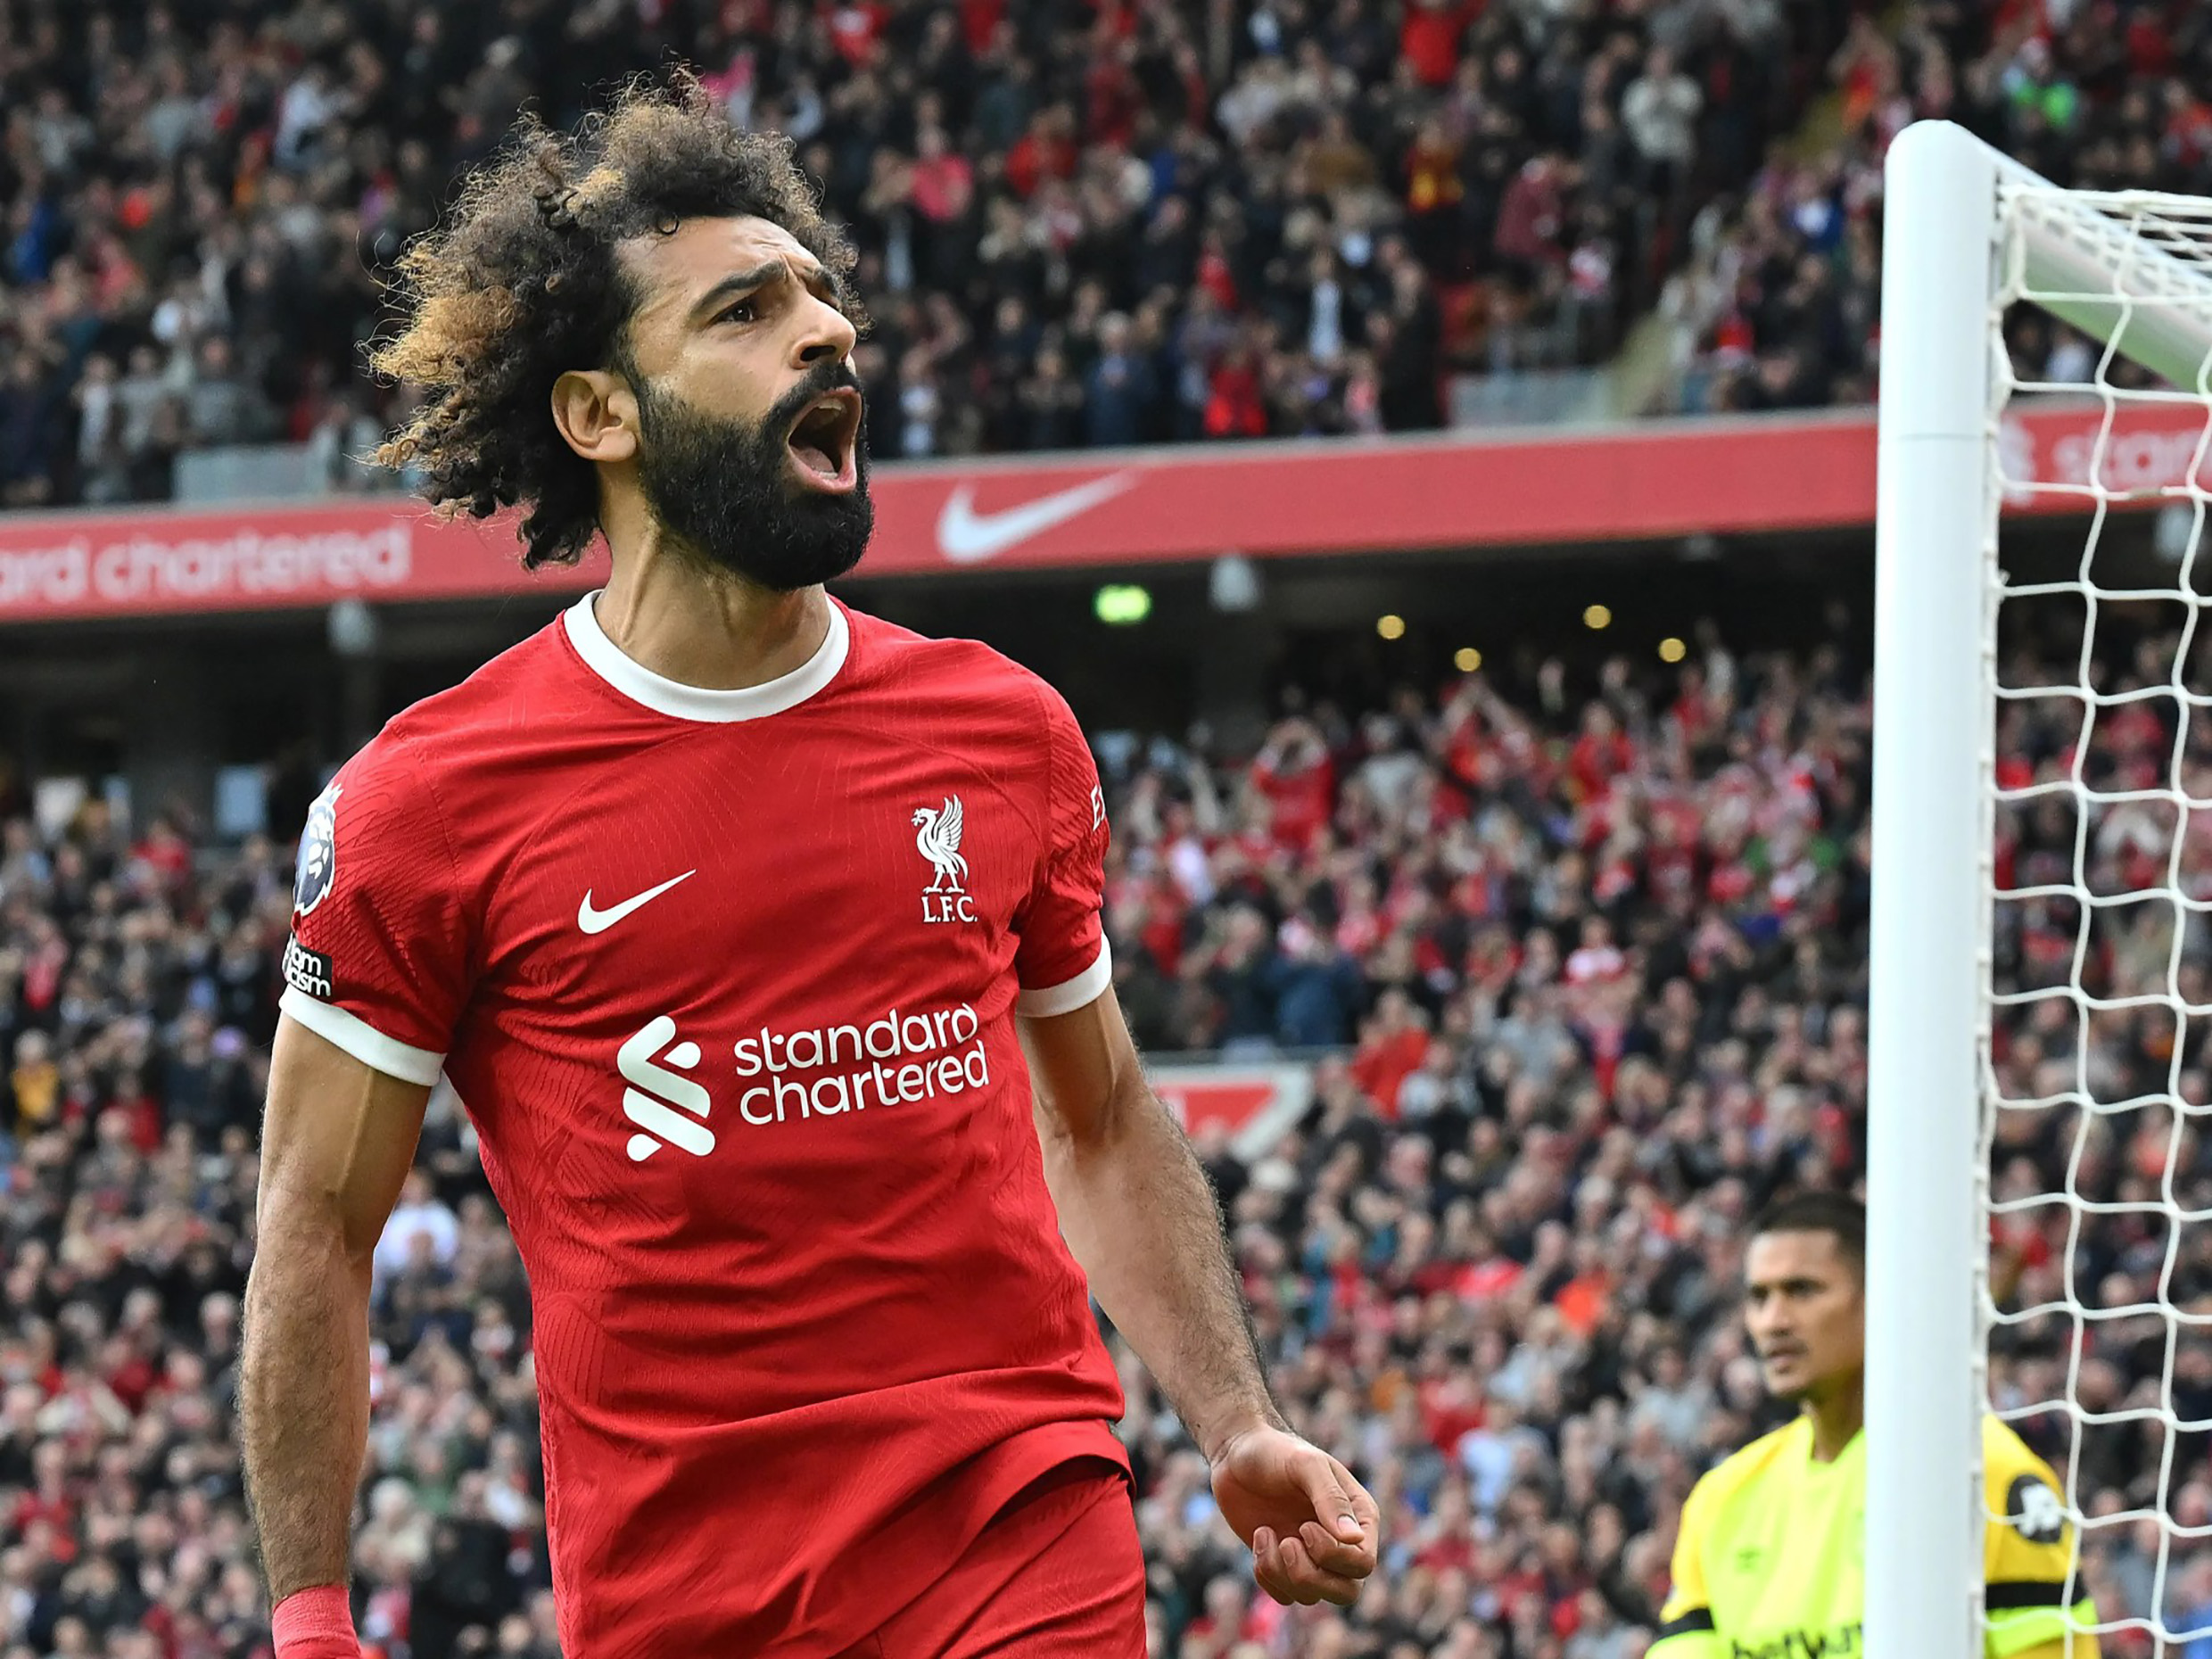 Salah tiếp tục tỏa sáng, giúp Liverpool sẵn sàng thách thức Manchester City trong cuộc đua vô địch Premier League mùa này.